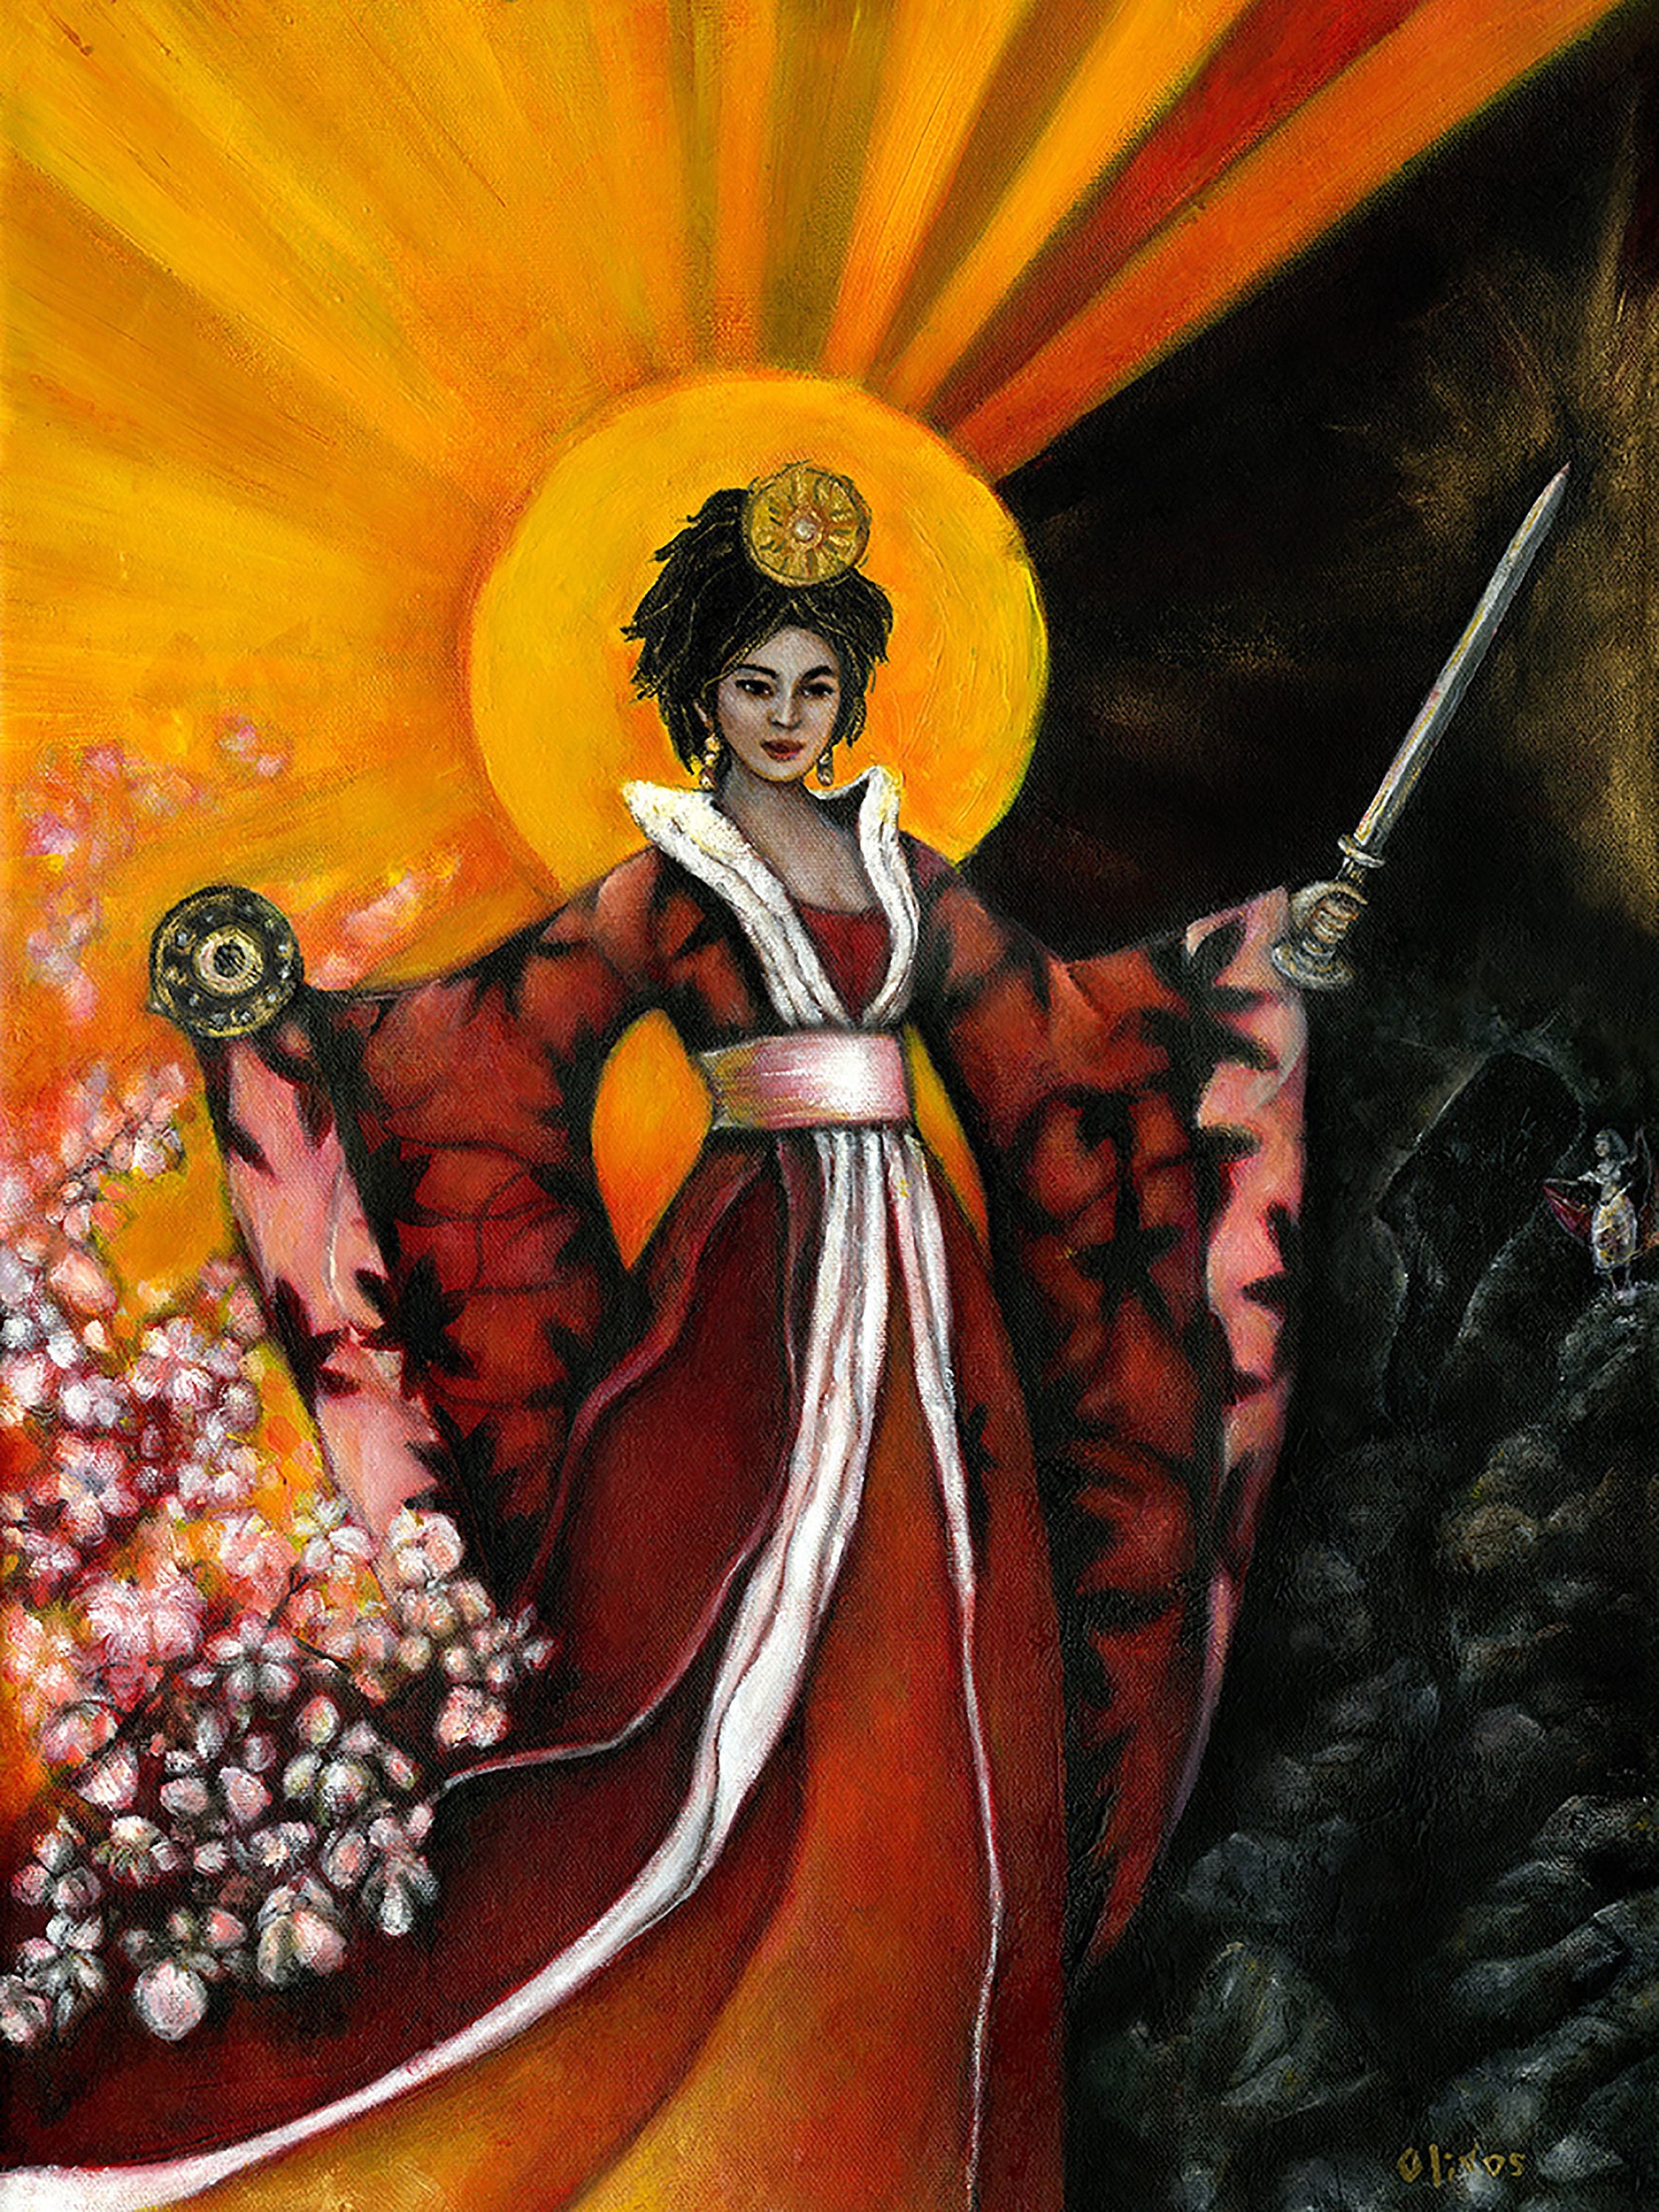 Amaterasu: The Japanese Sun Goddess